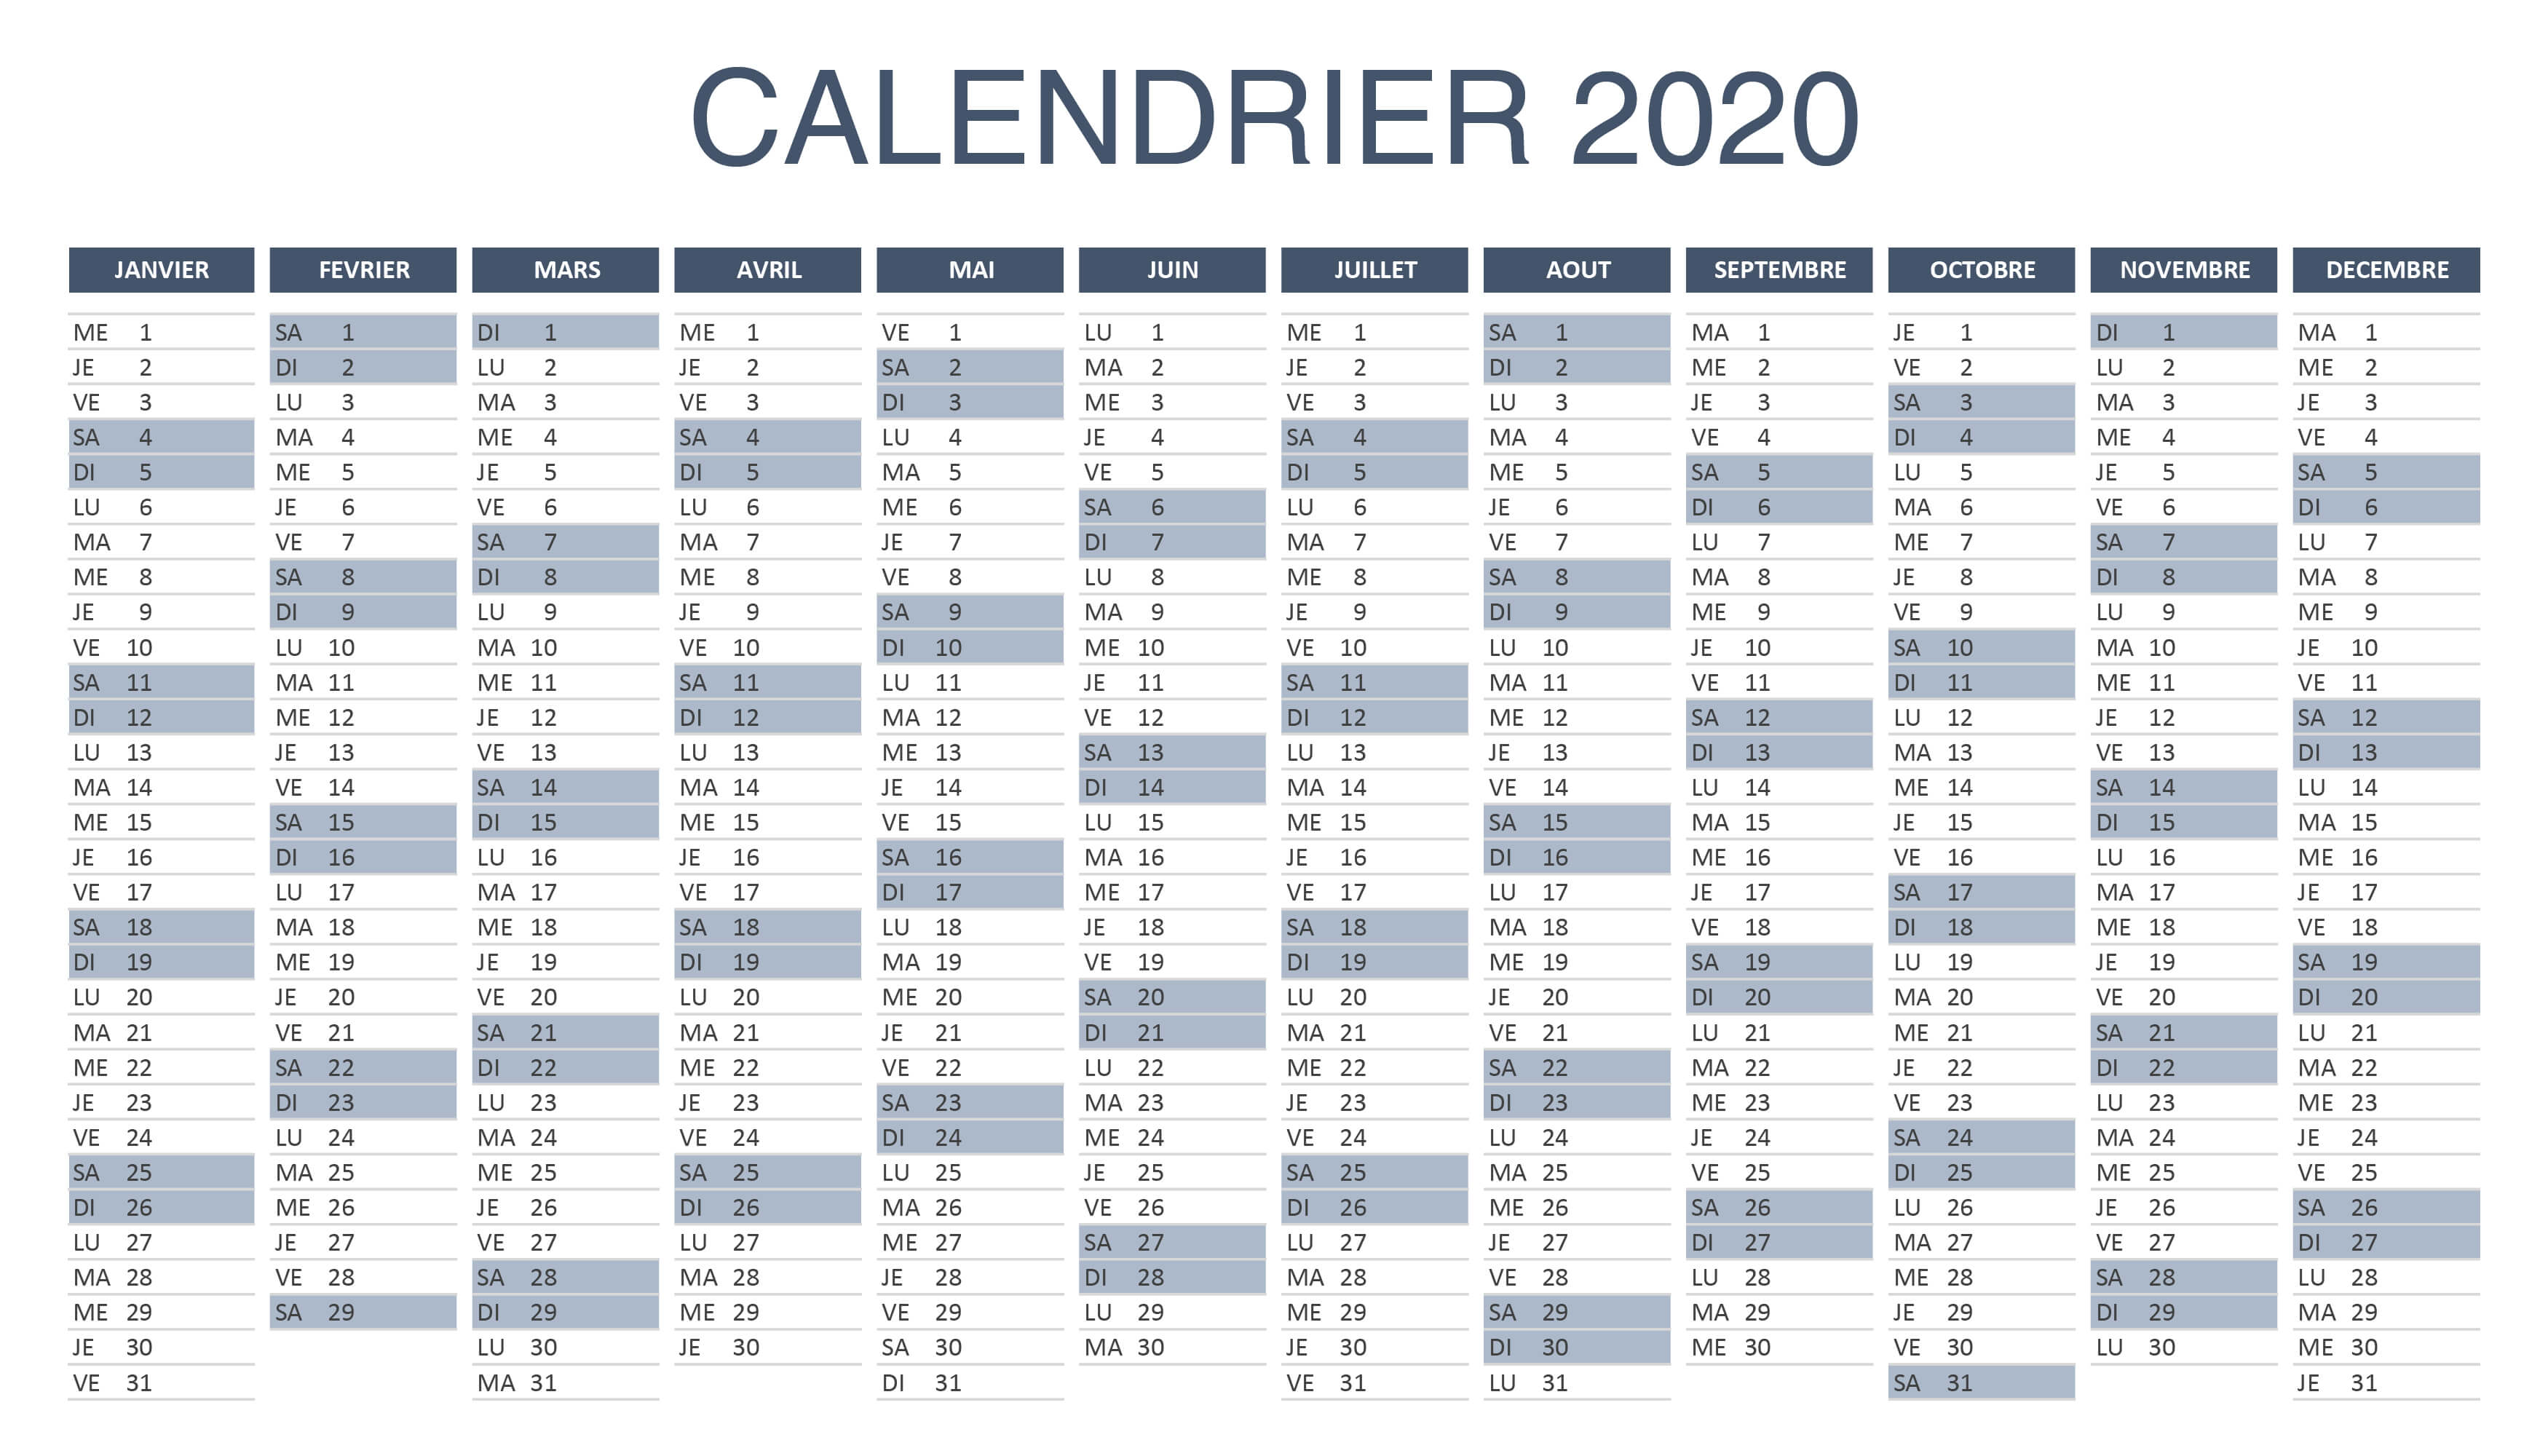 Le calendrier éditorial en 2020